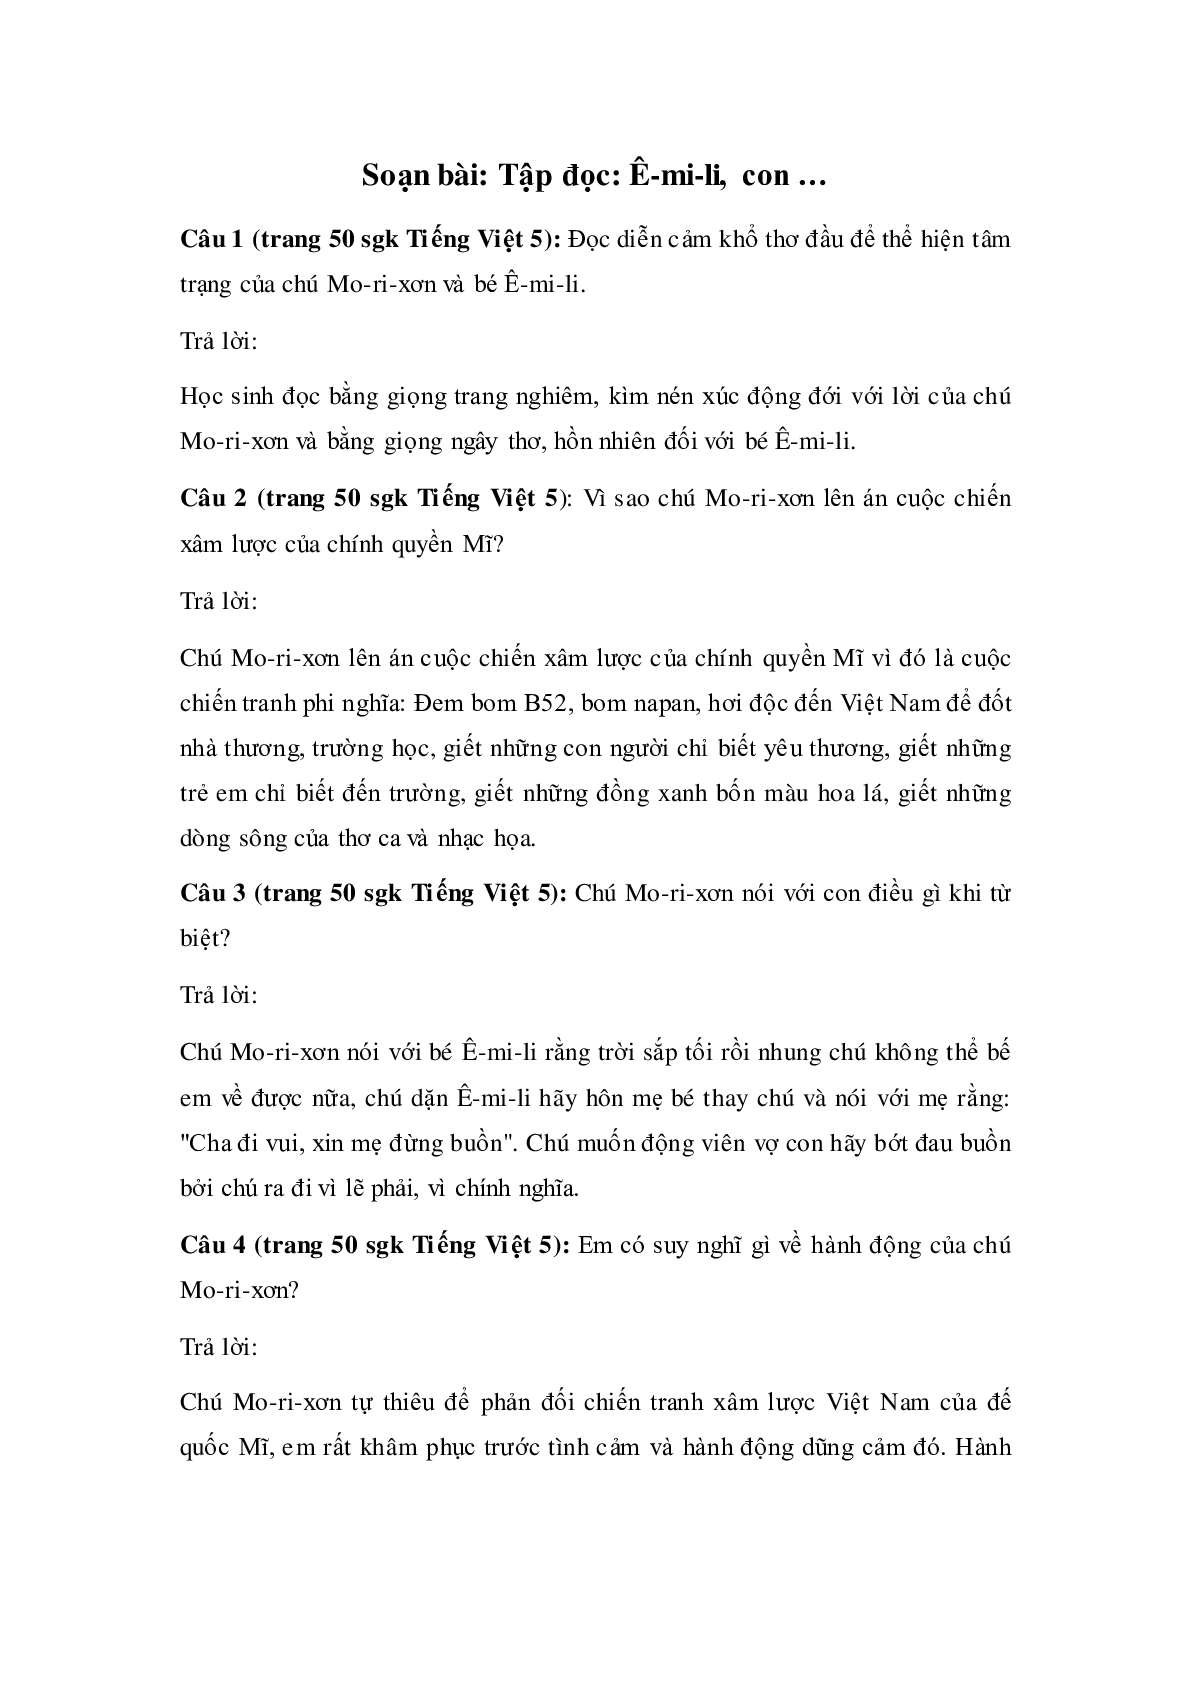 Soạn Tiếng Việt lớp 5: Tập đọc: Ê-mi-li, con mới nhất (trang 1)